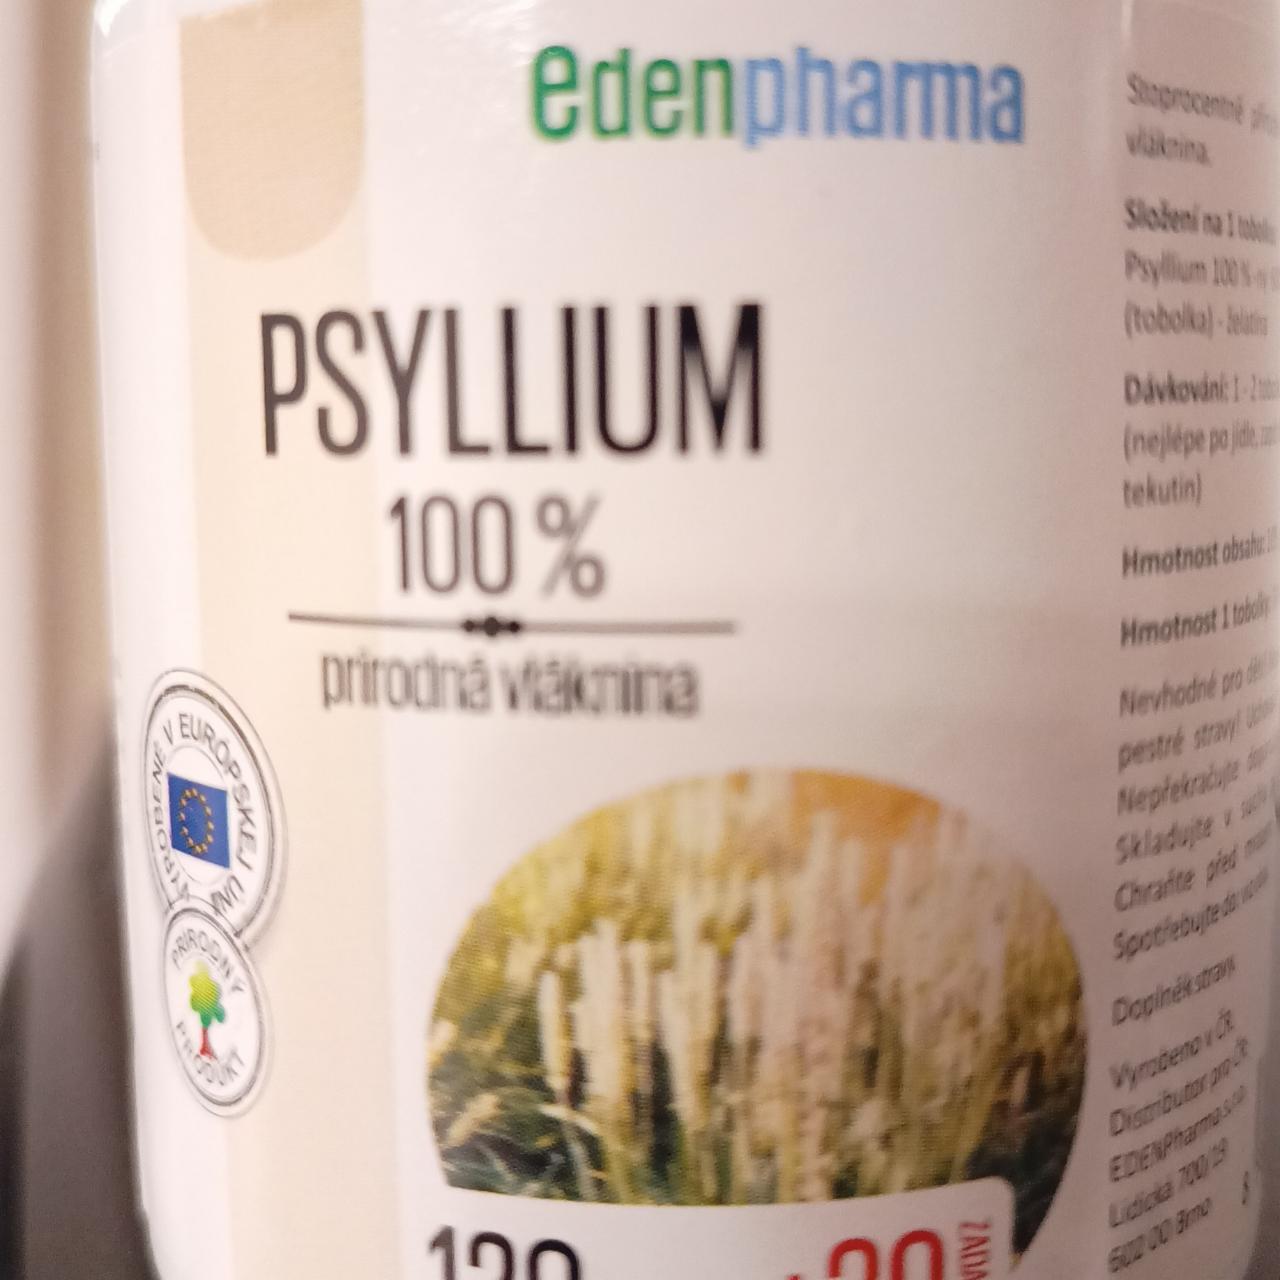 Fotografie - Psyllium 100% Edenpharma